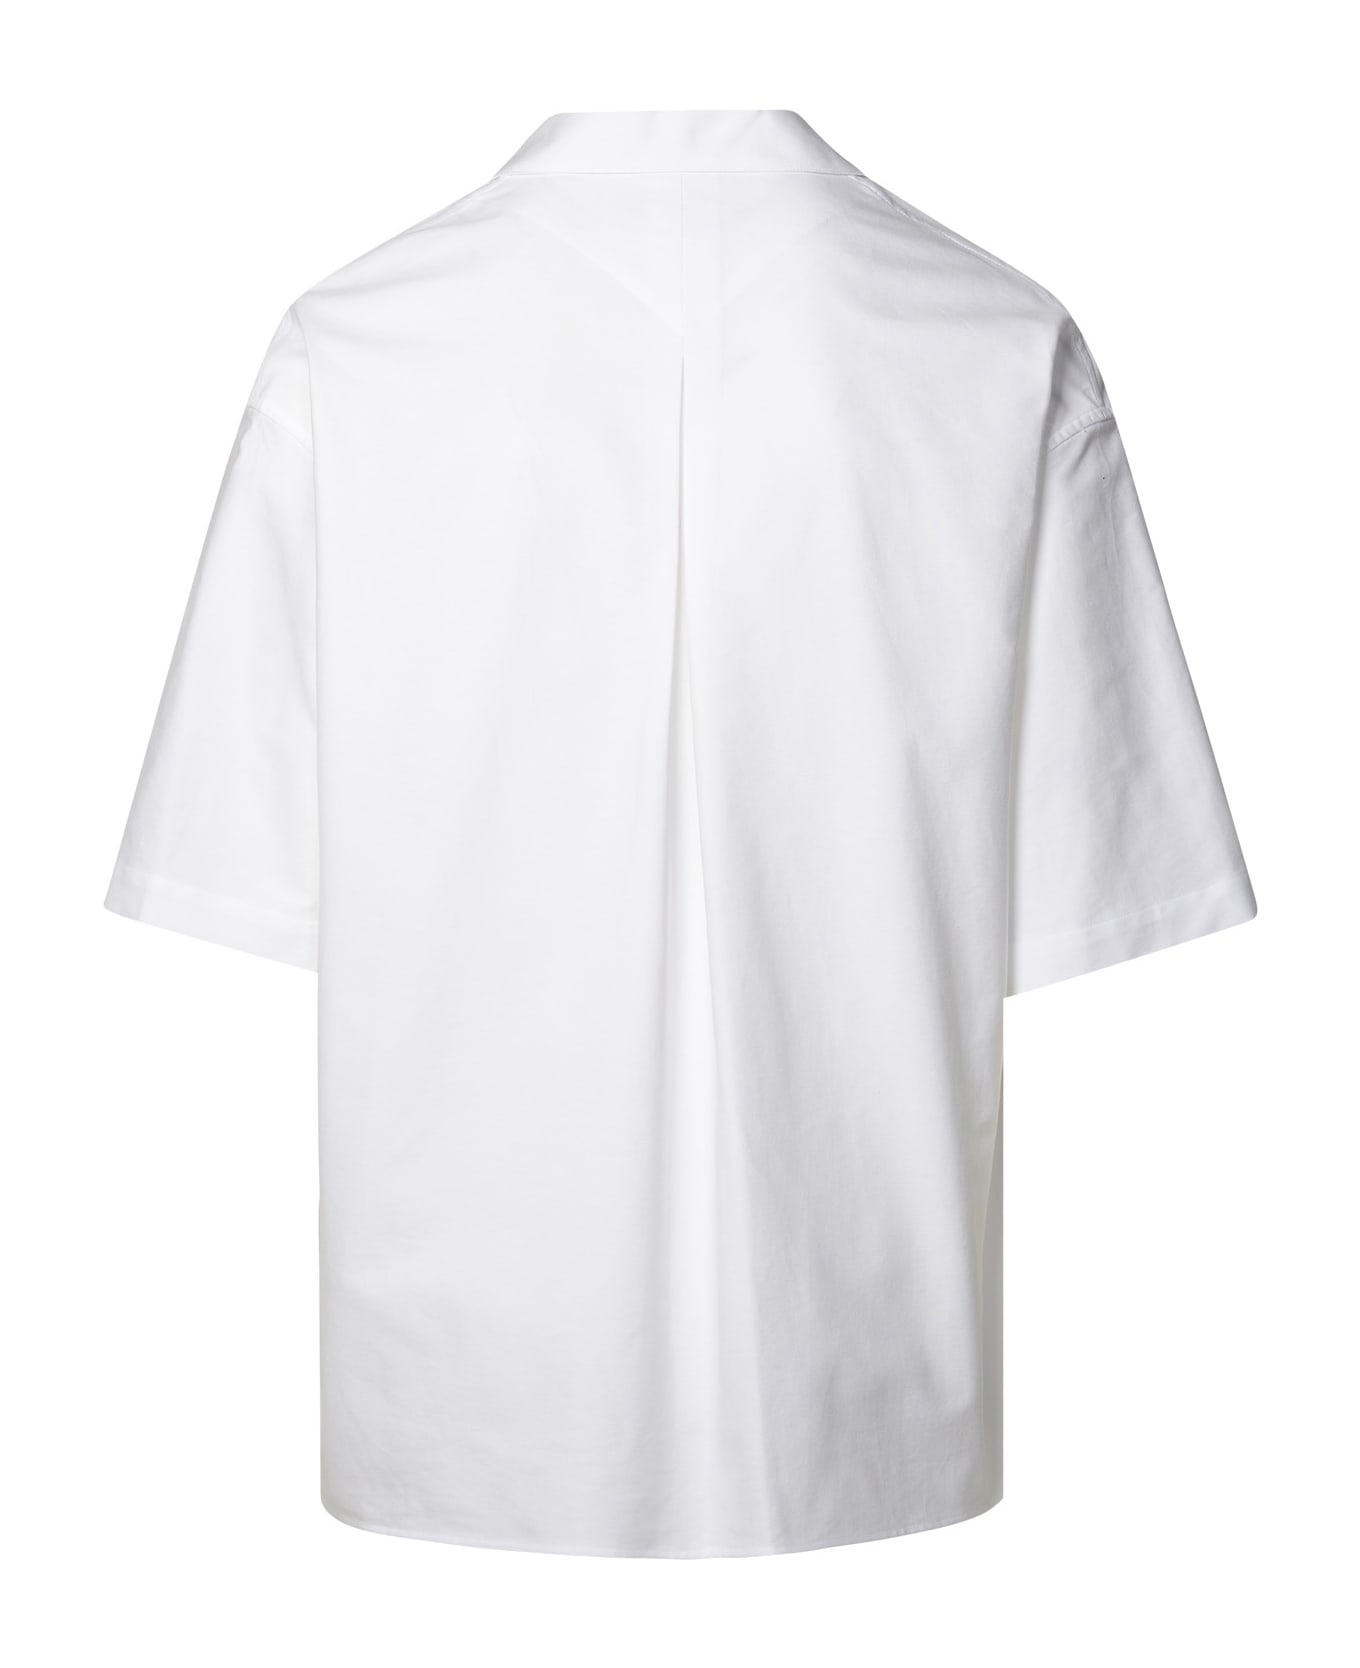 Kenzo White Cotton Shirt - white